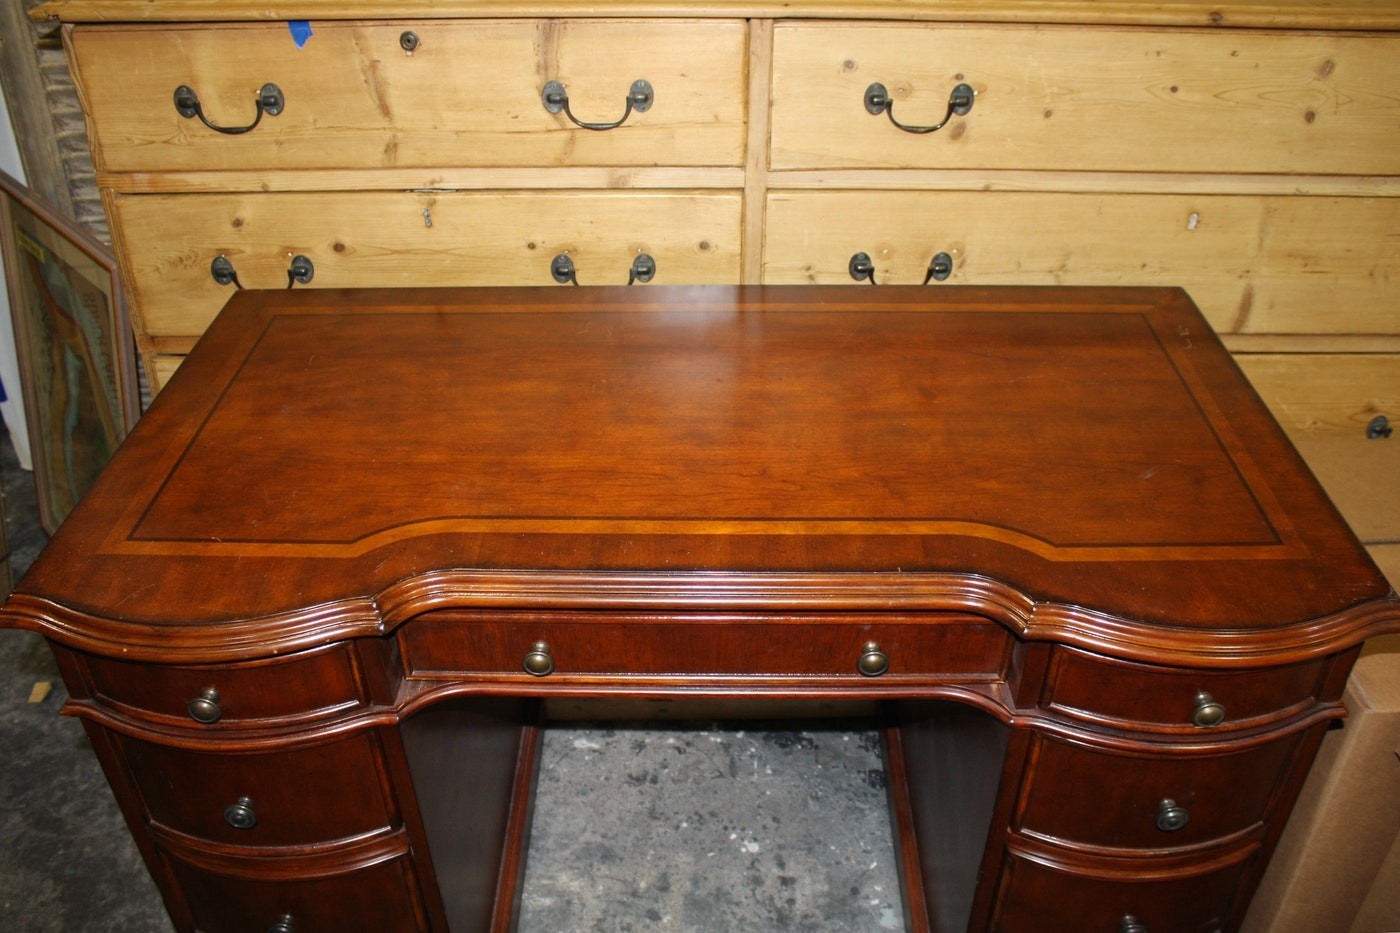 Seven seas mahogany knee hole desk by hooker furniture 1